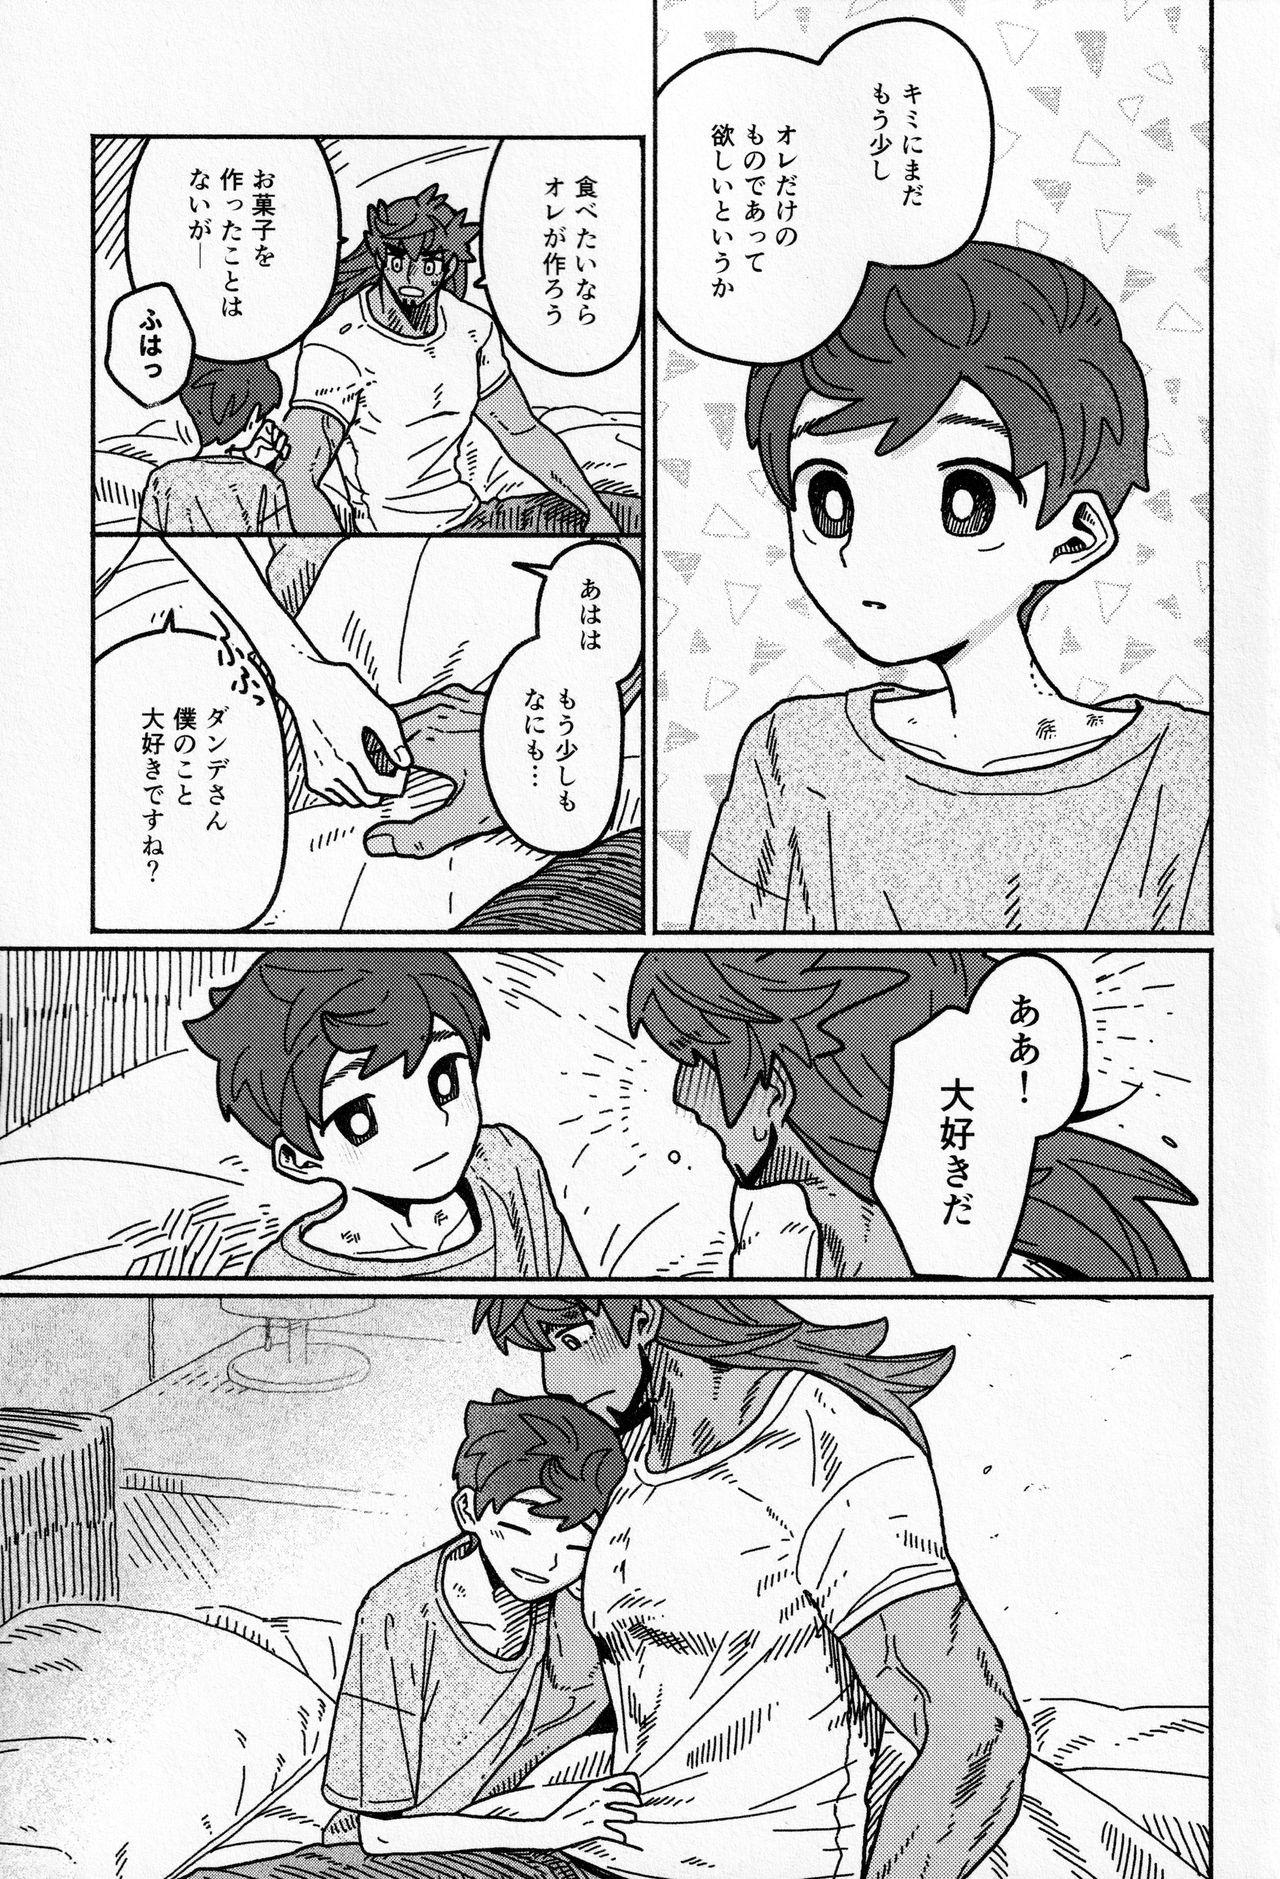 Pov Sex Koi no Kyoukasho - Pokemon | pocket monsters Onlyfans - Page 36